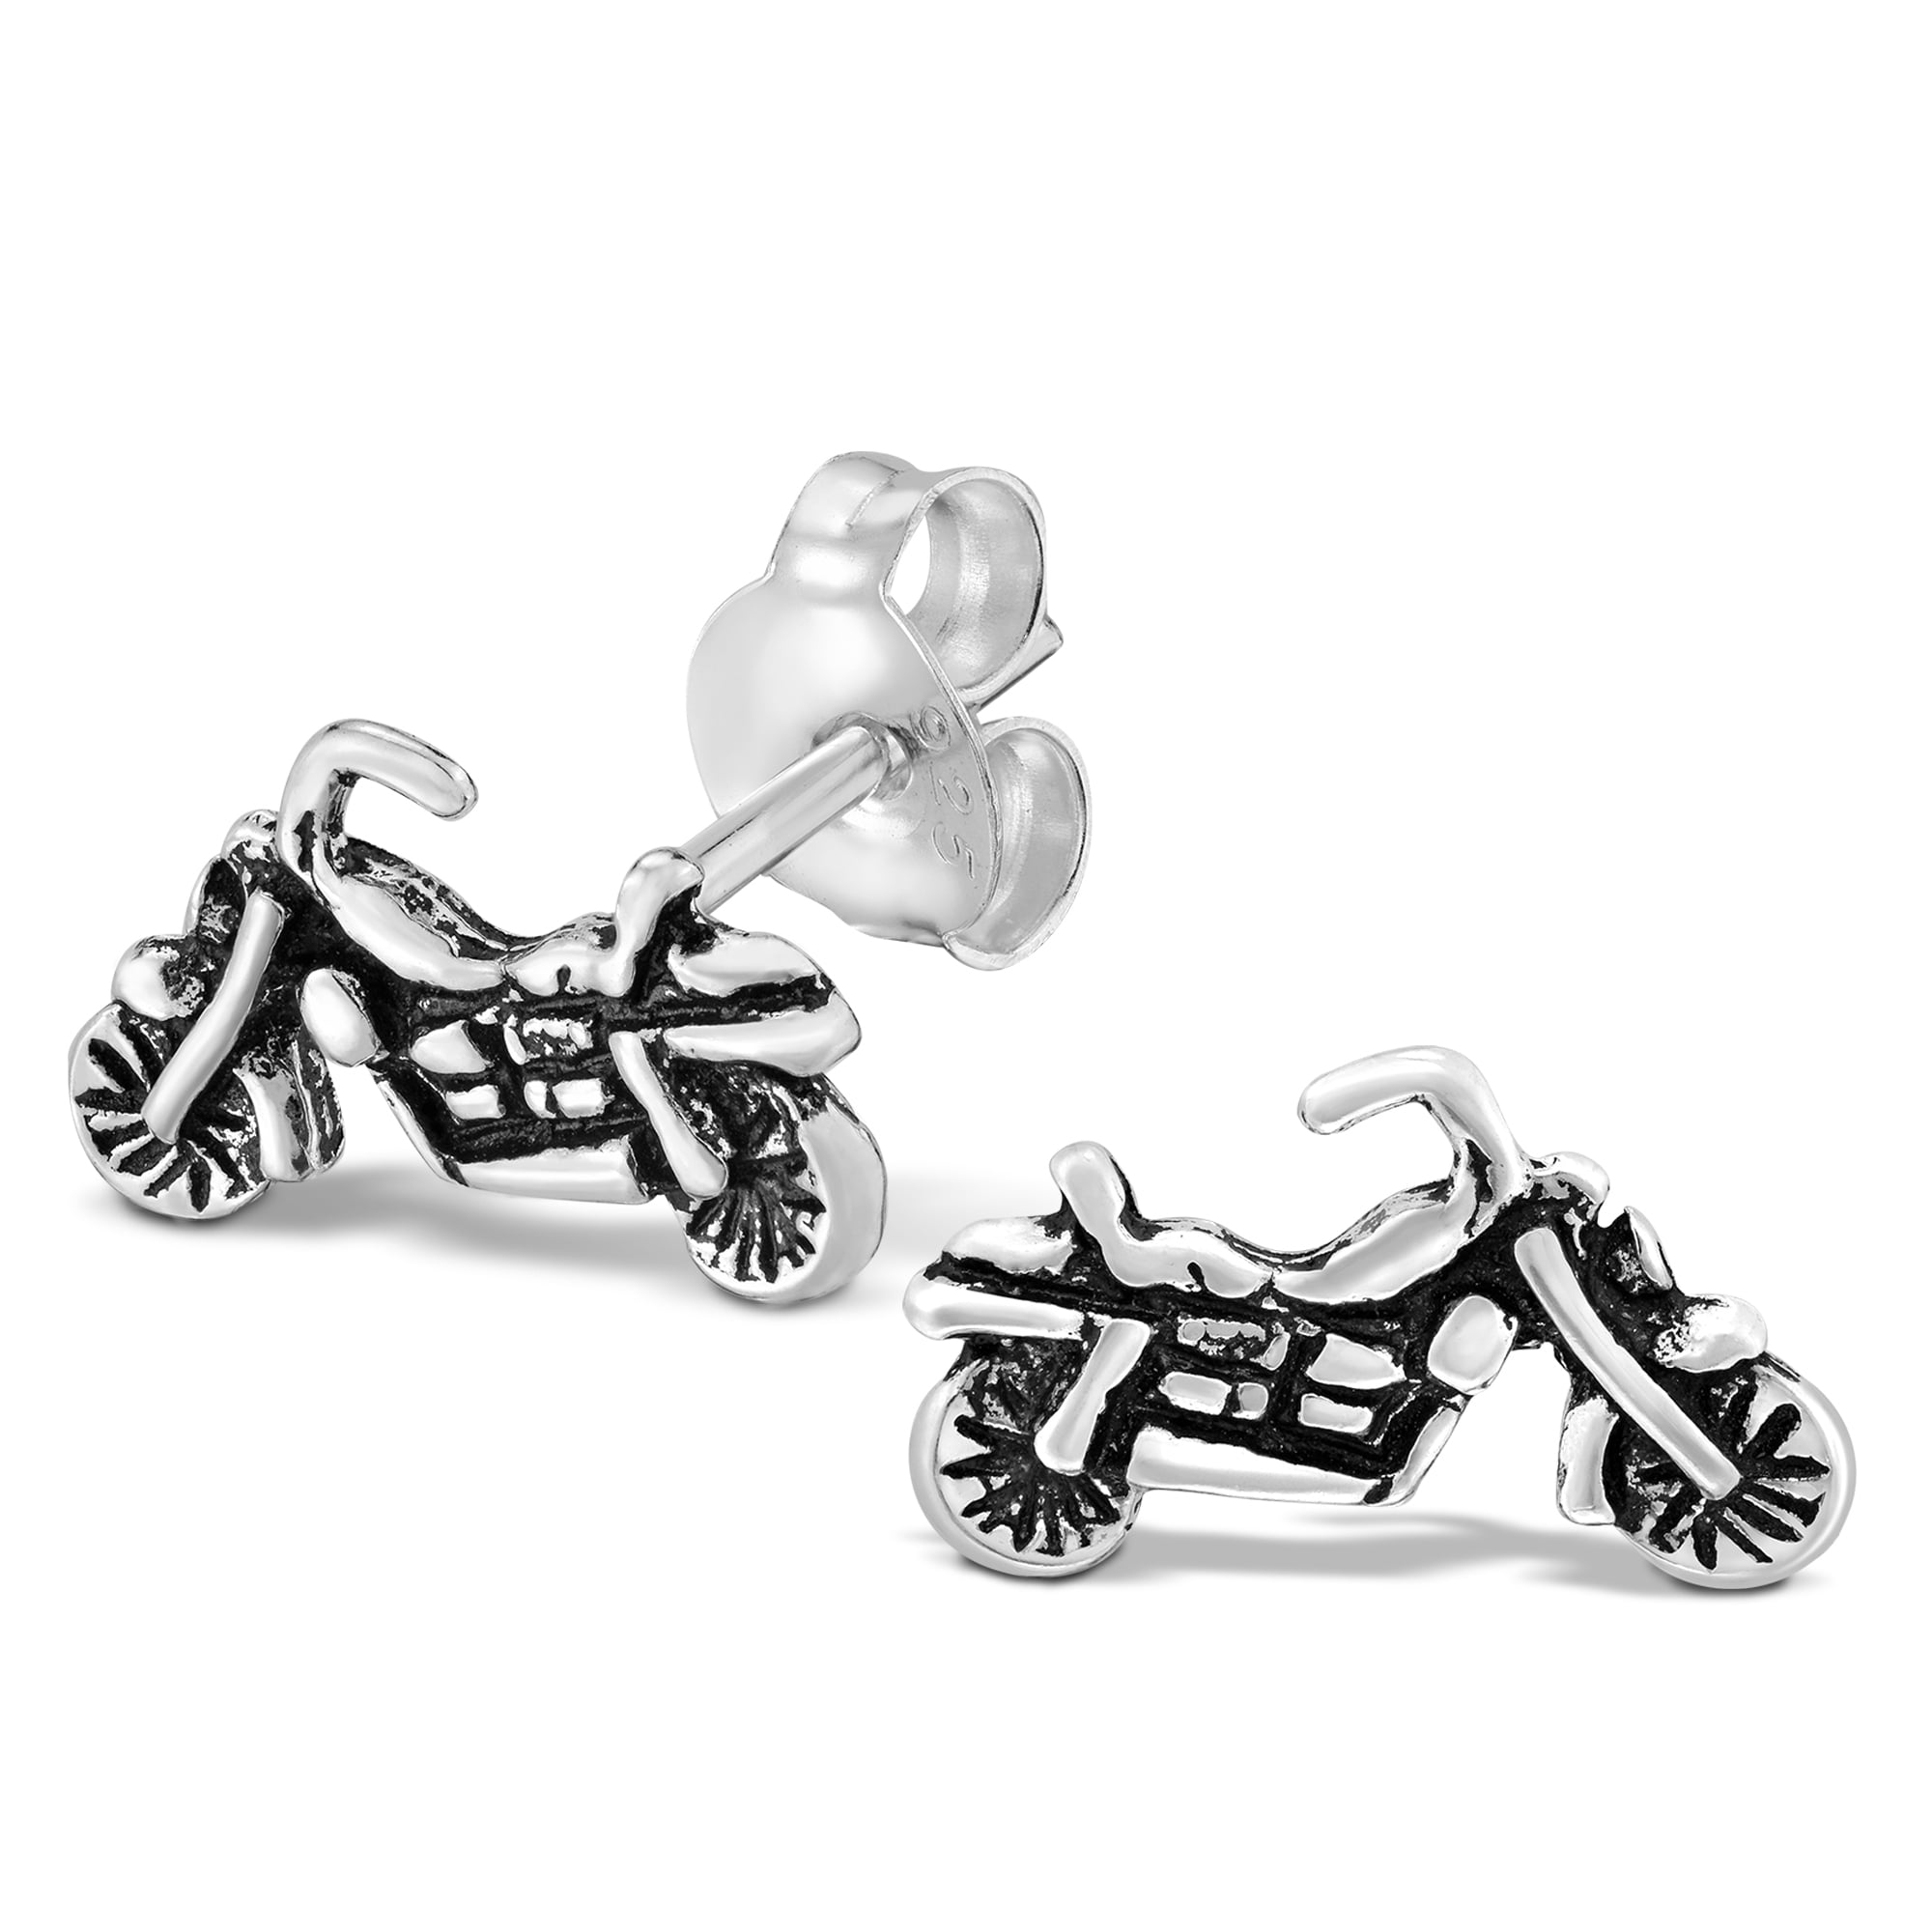 polymer earrings polymer earrings biker jewelry Cool motorcycle earrings for bikergirls polymer clay earrings biker earrings